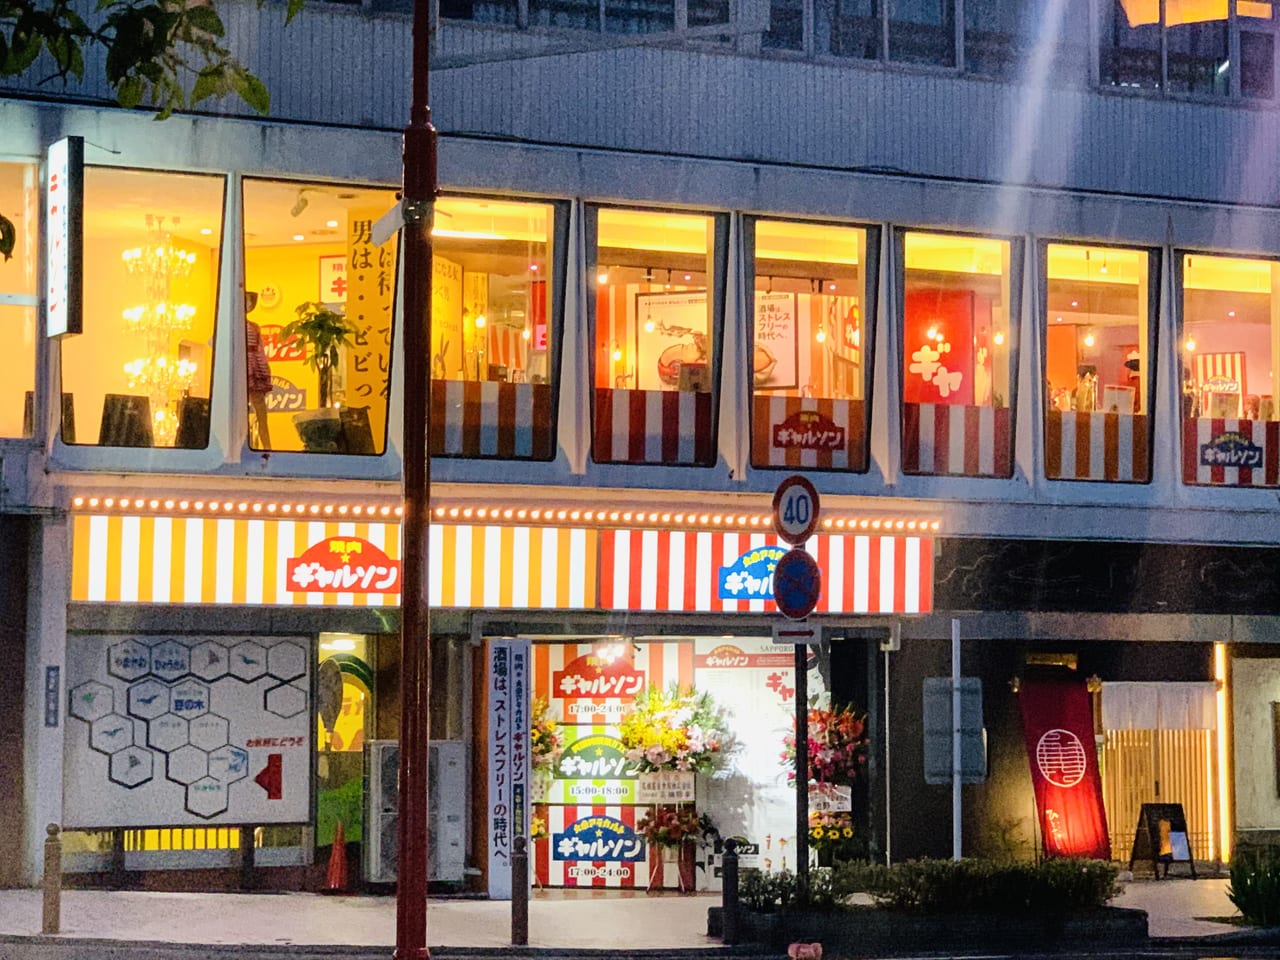 山形市 札幌の人気店 大衆焼肉ギャルソン 大衆アラカルトギャルソンが東北 山形初上陸 オープンしました 号外net 山形市